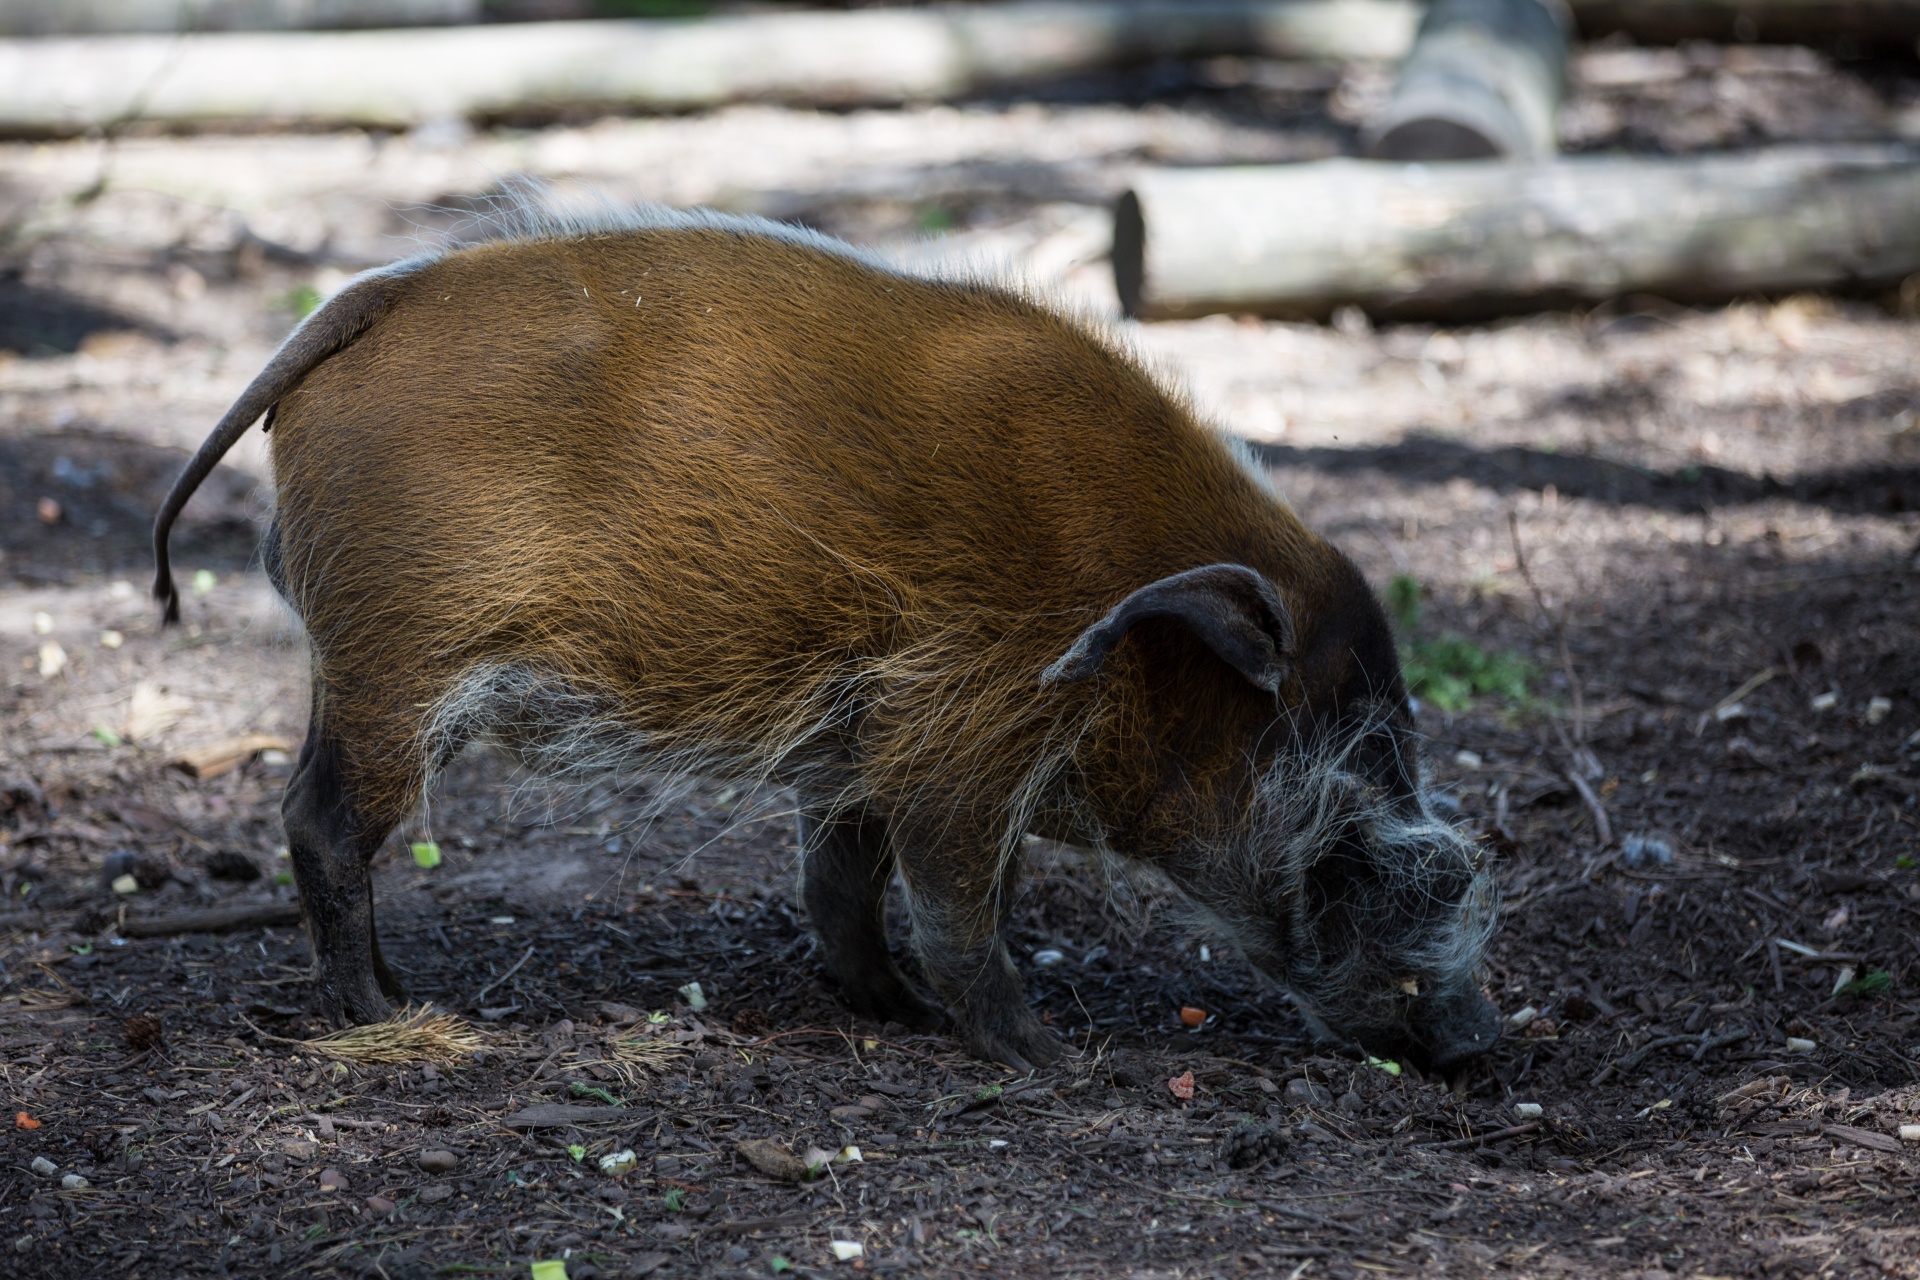 Red River Hog, Pig, Animal